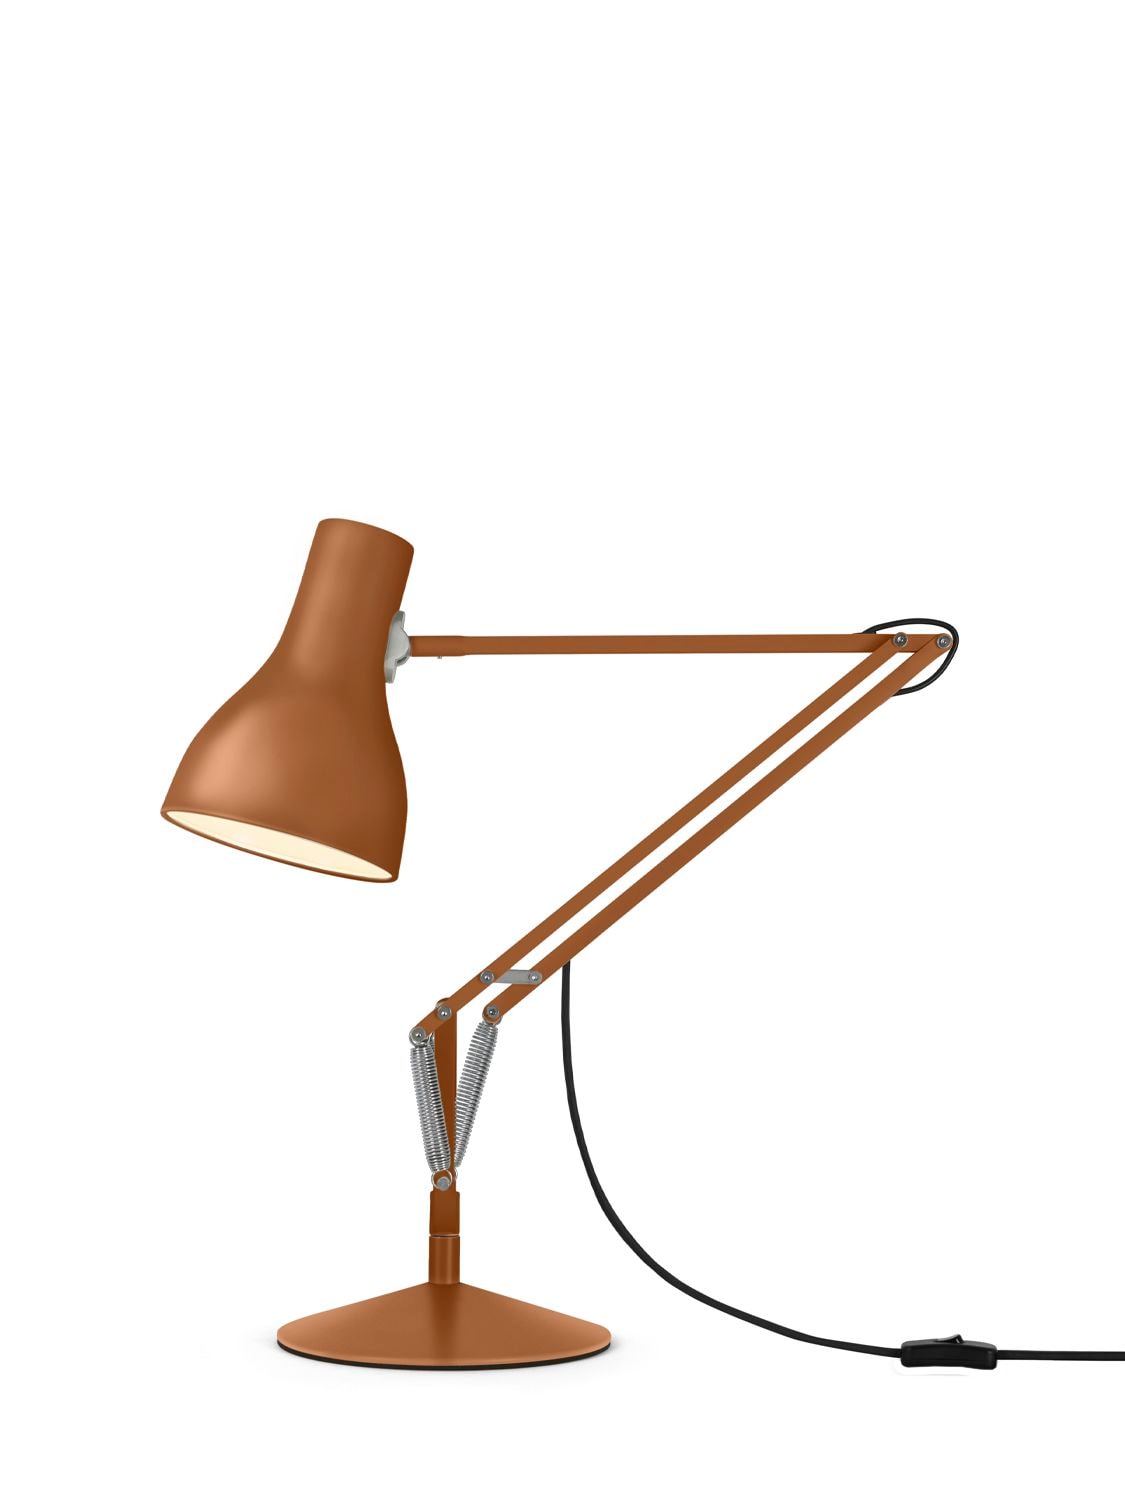 Anglepoise Margaret Howell Type 75 Desk Lamp